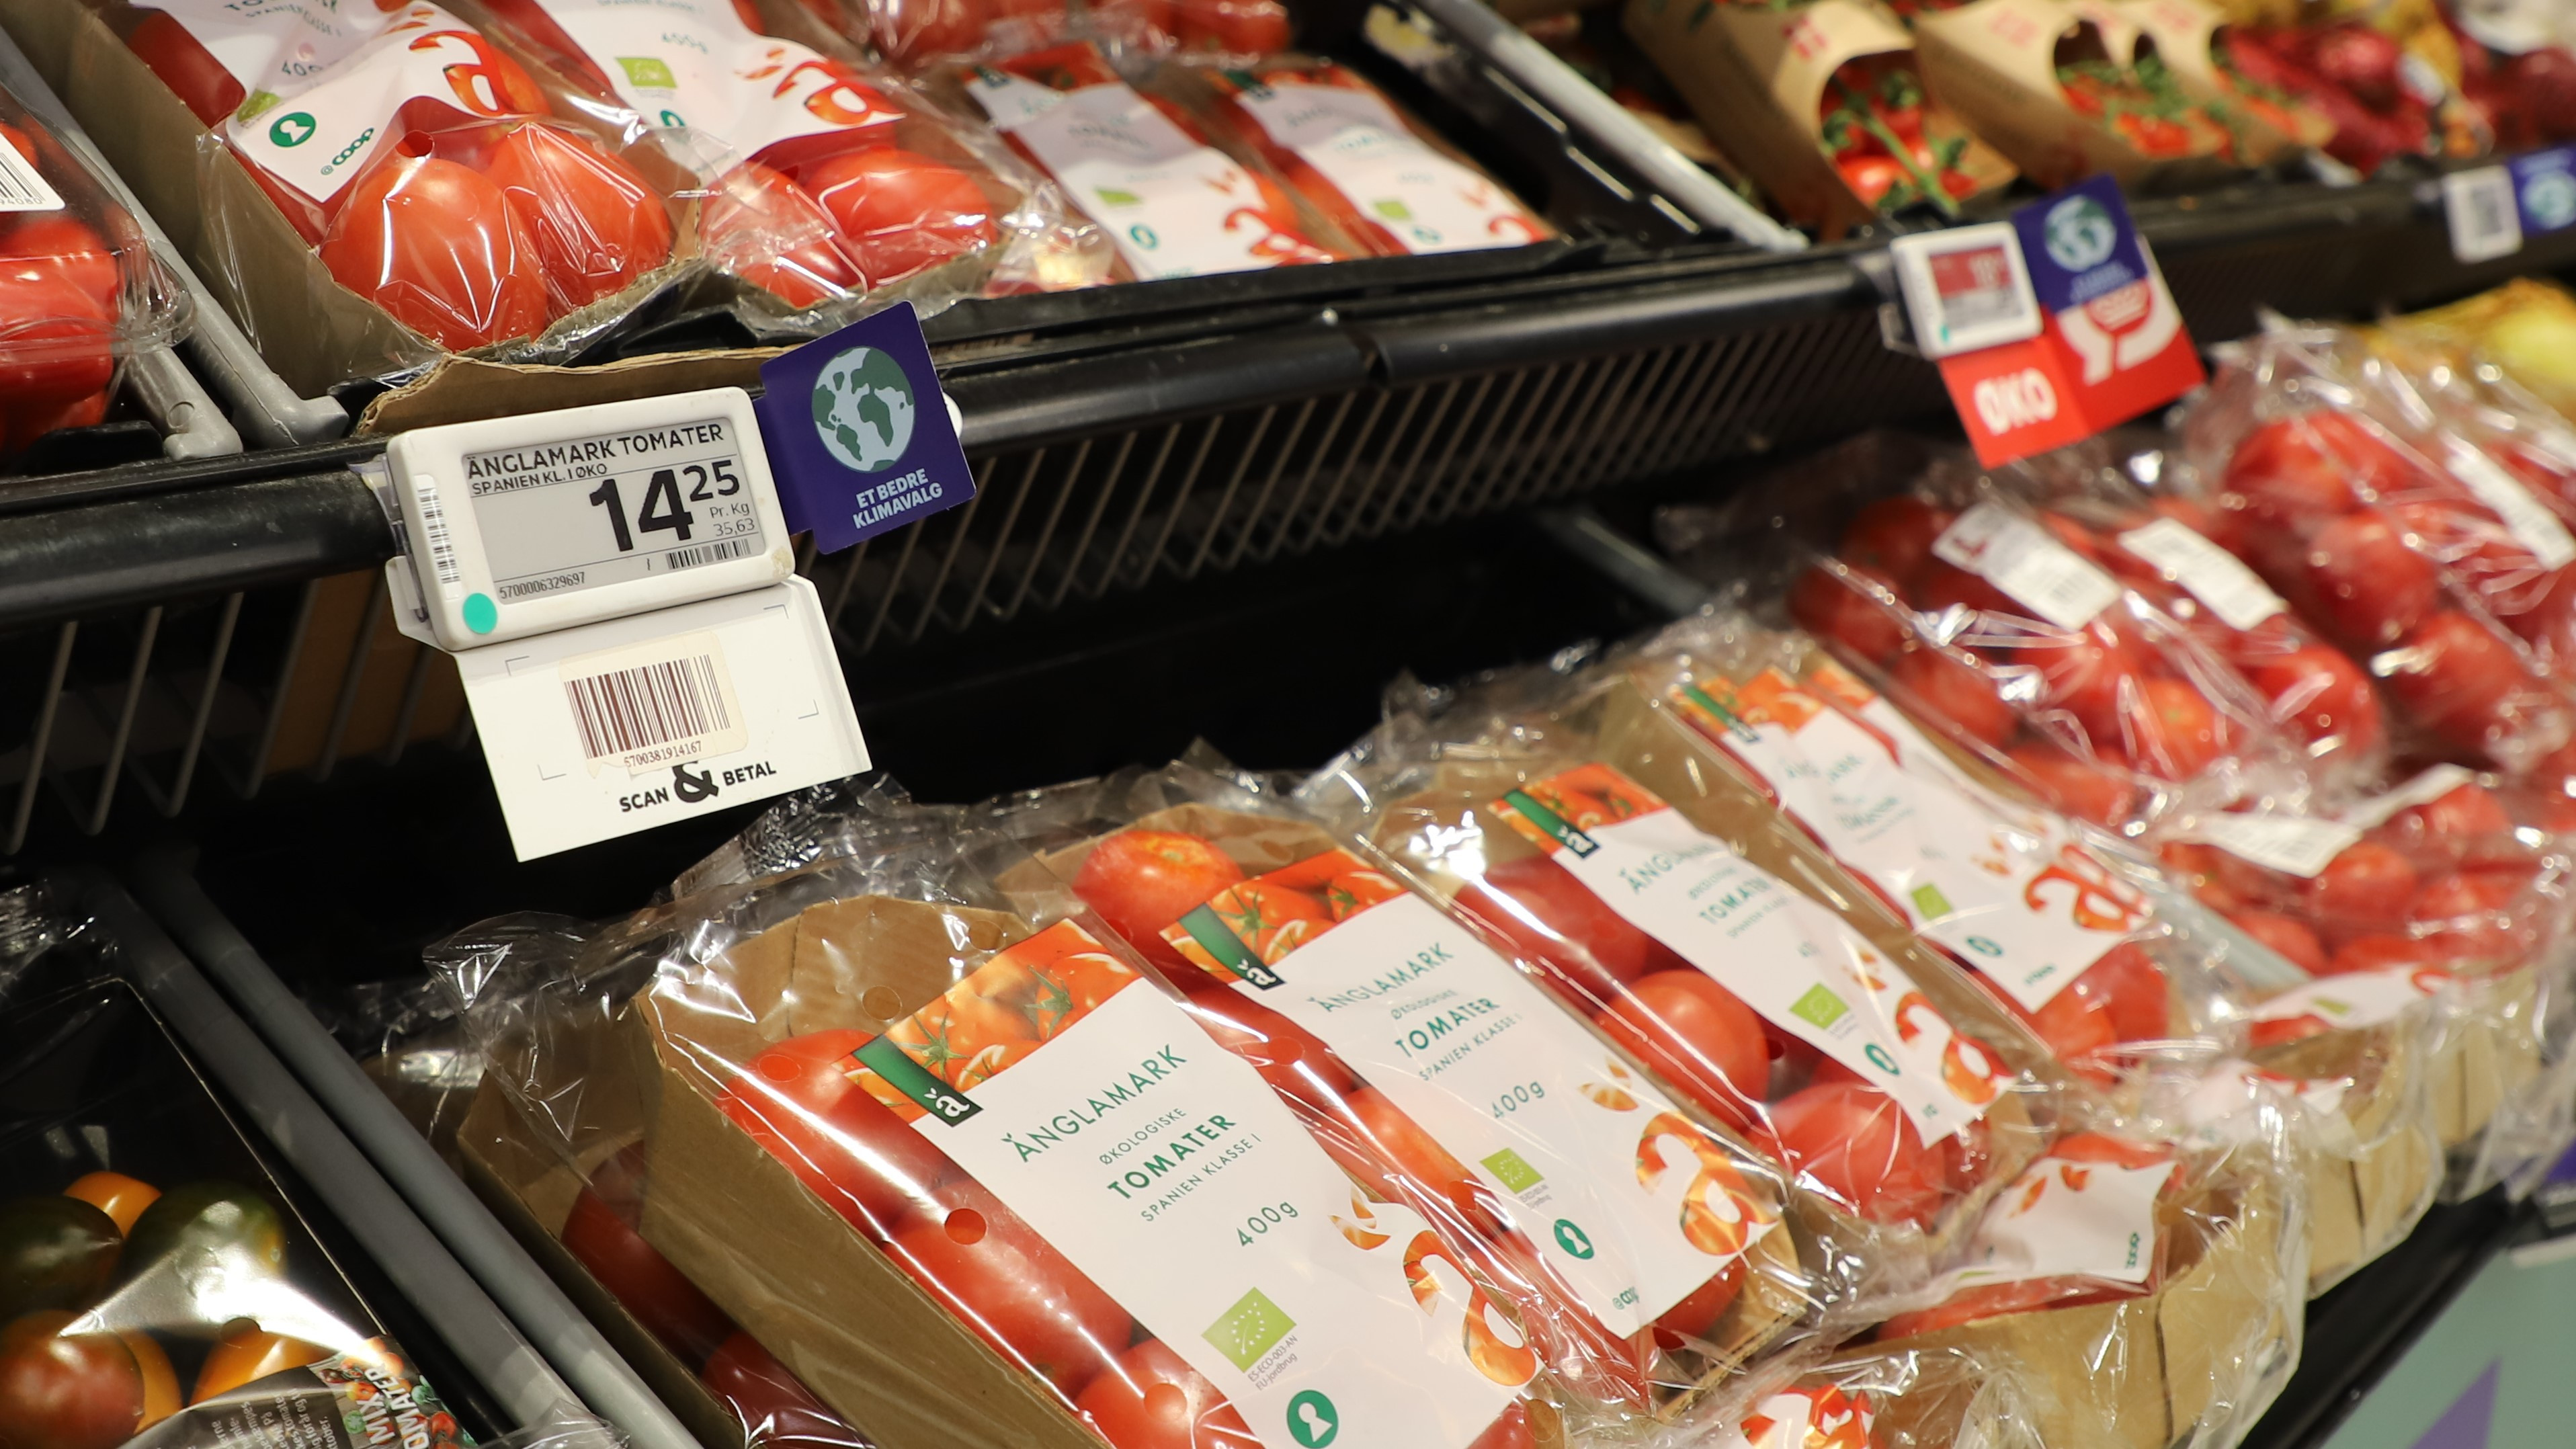 I Klima Kvickly bliver kunderne guidet til det klimaerigtige køb via små mærkater på fødevarerne, og næste step bliver at sprede konceptet til non-food-varerne